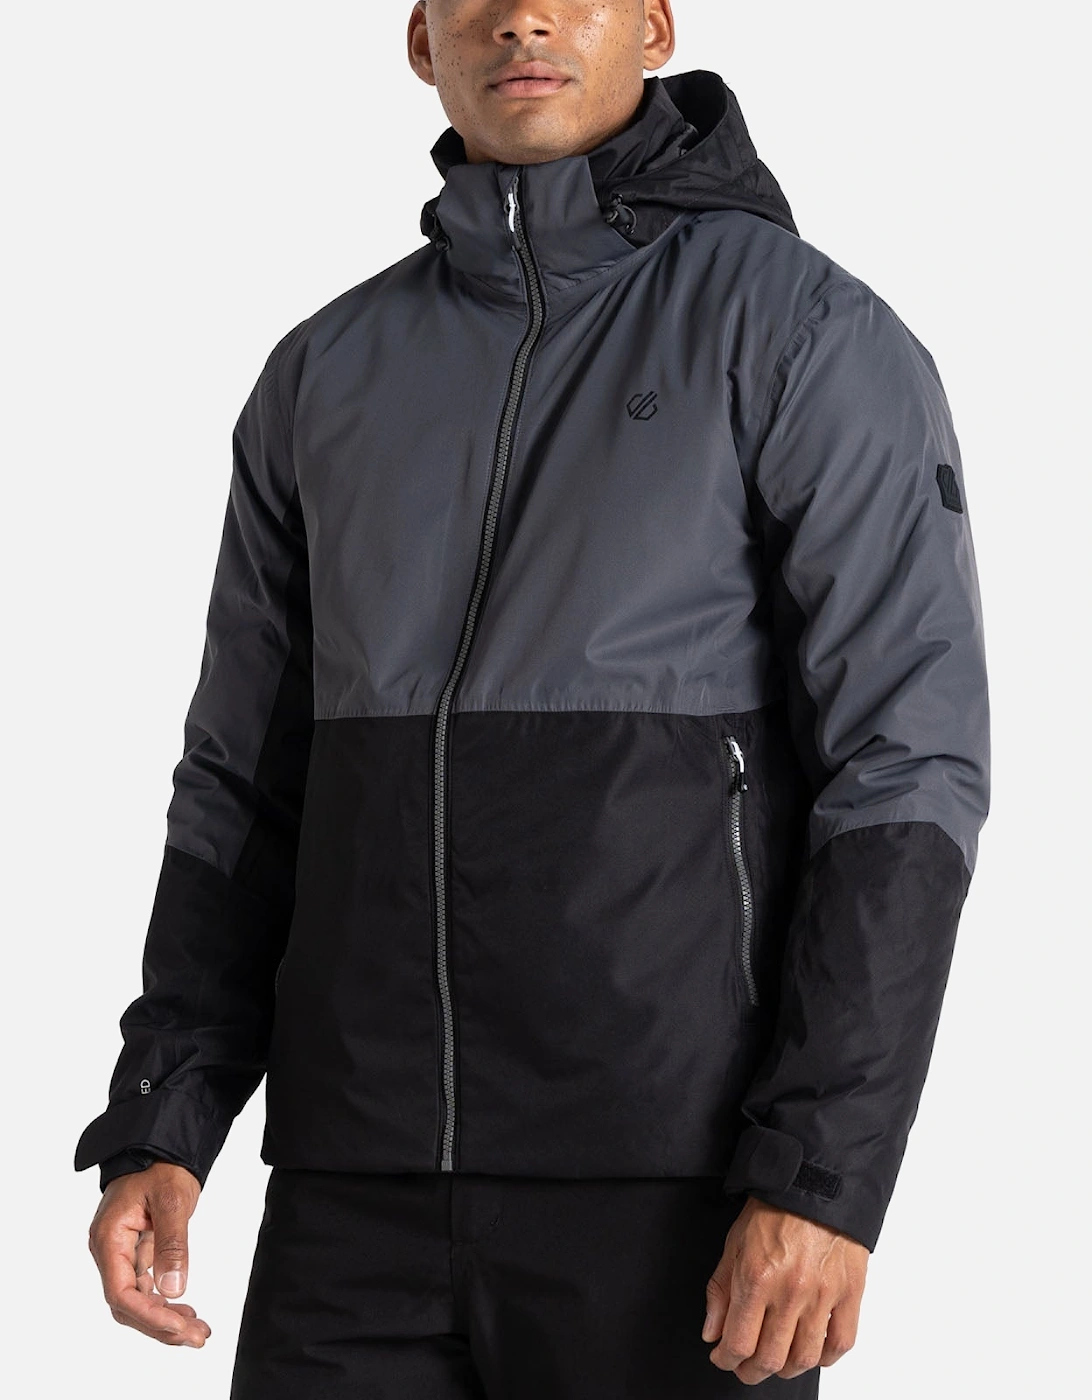 Mens Precision Waterproof Hooded Thermal Ski Jacket Coat, 14 of 13